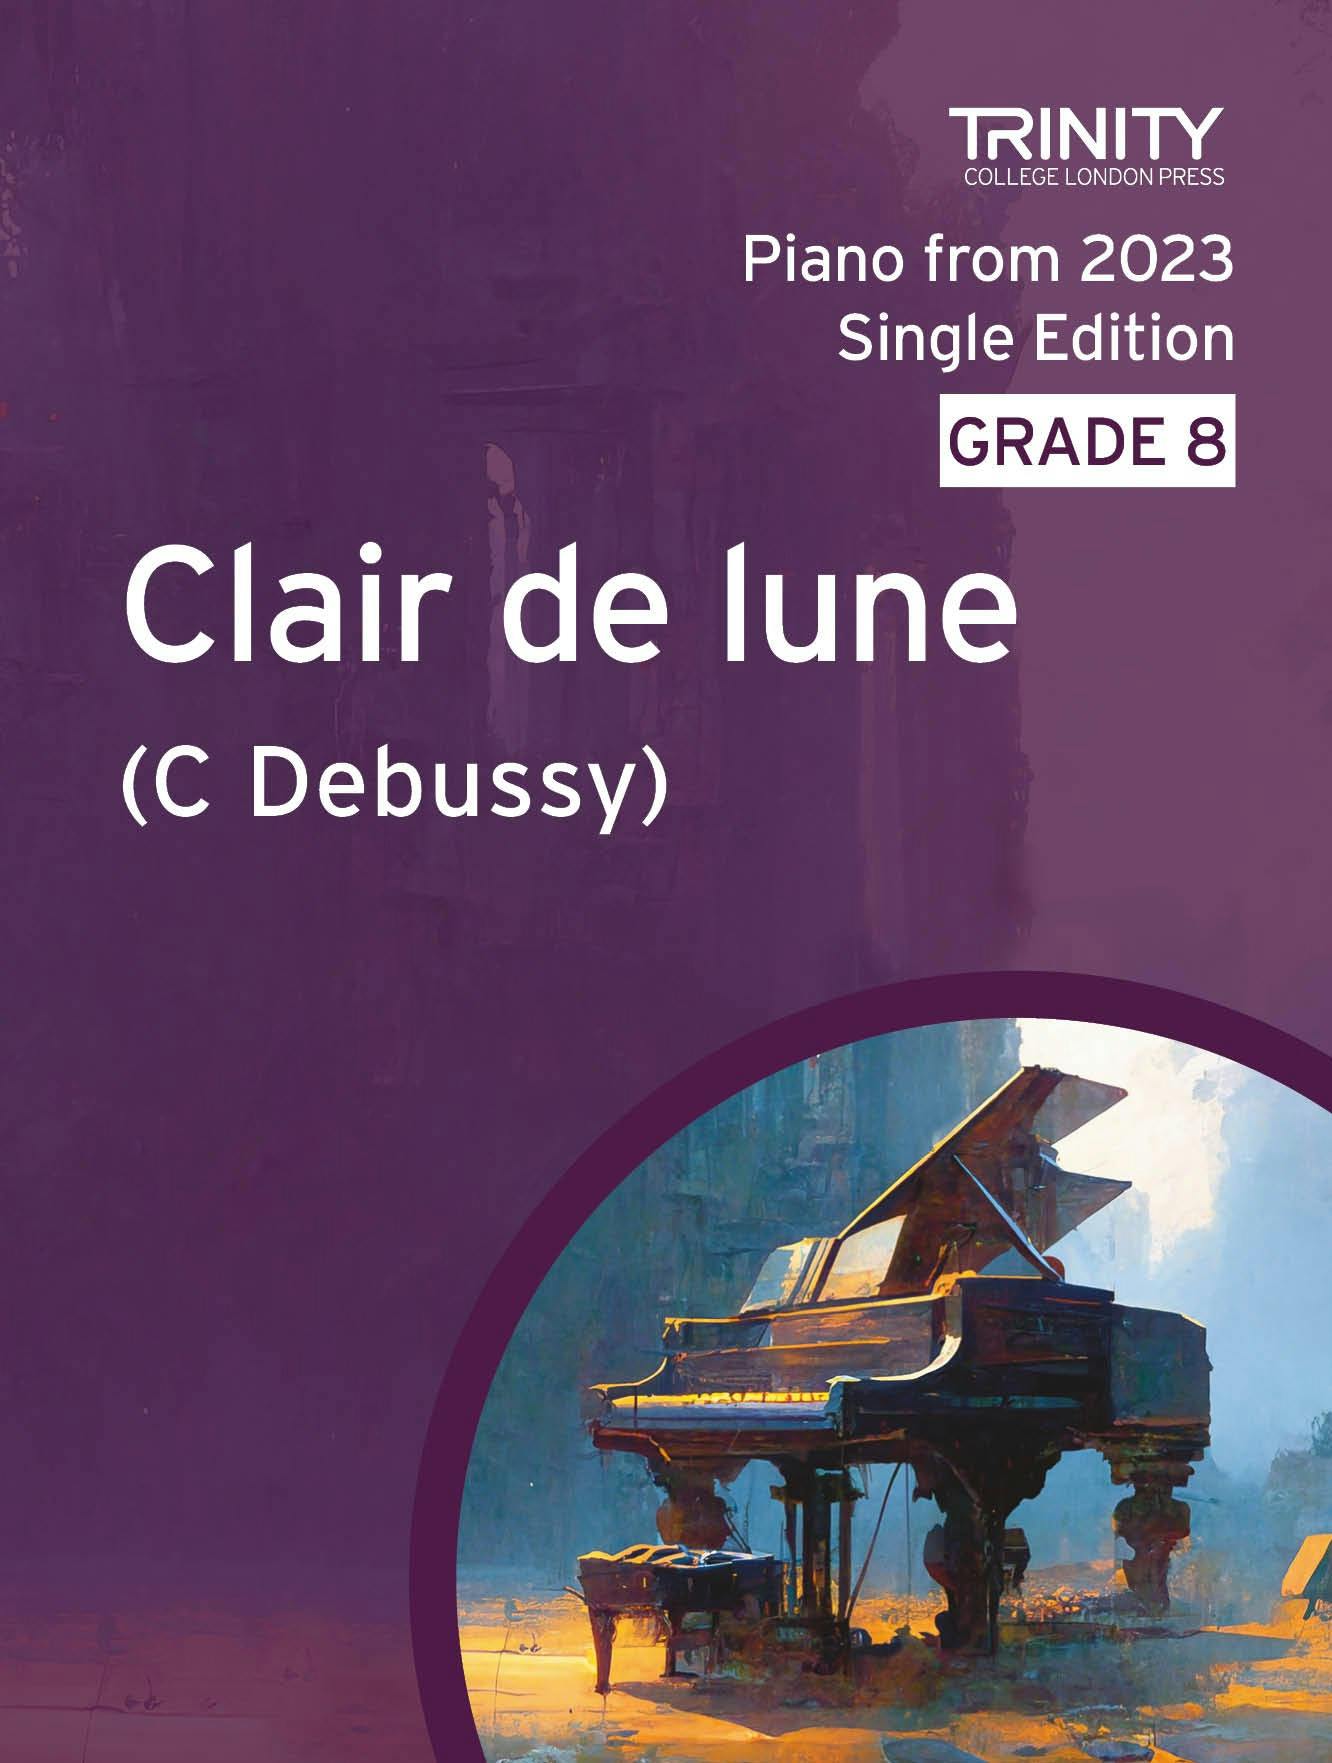 Clair de lune (3rd movt from Suite Bergamasque) - Claude Debussy (Grade 8 Piano) - ebook